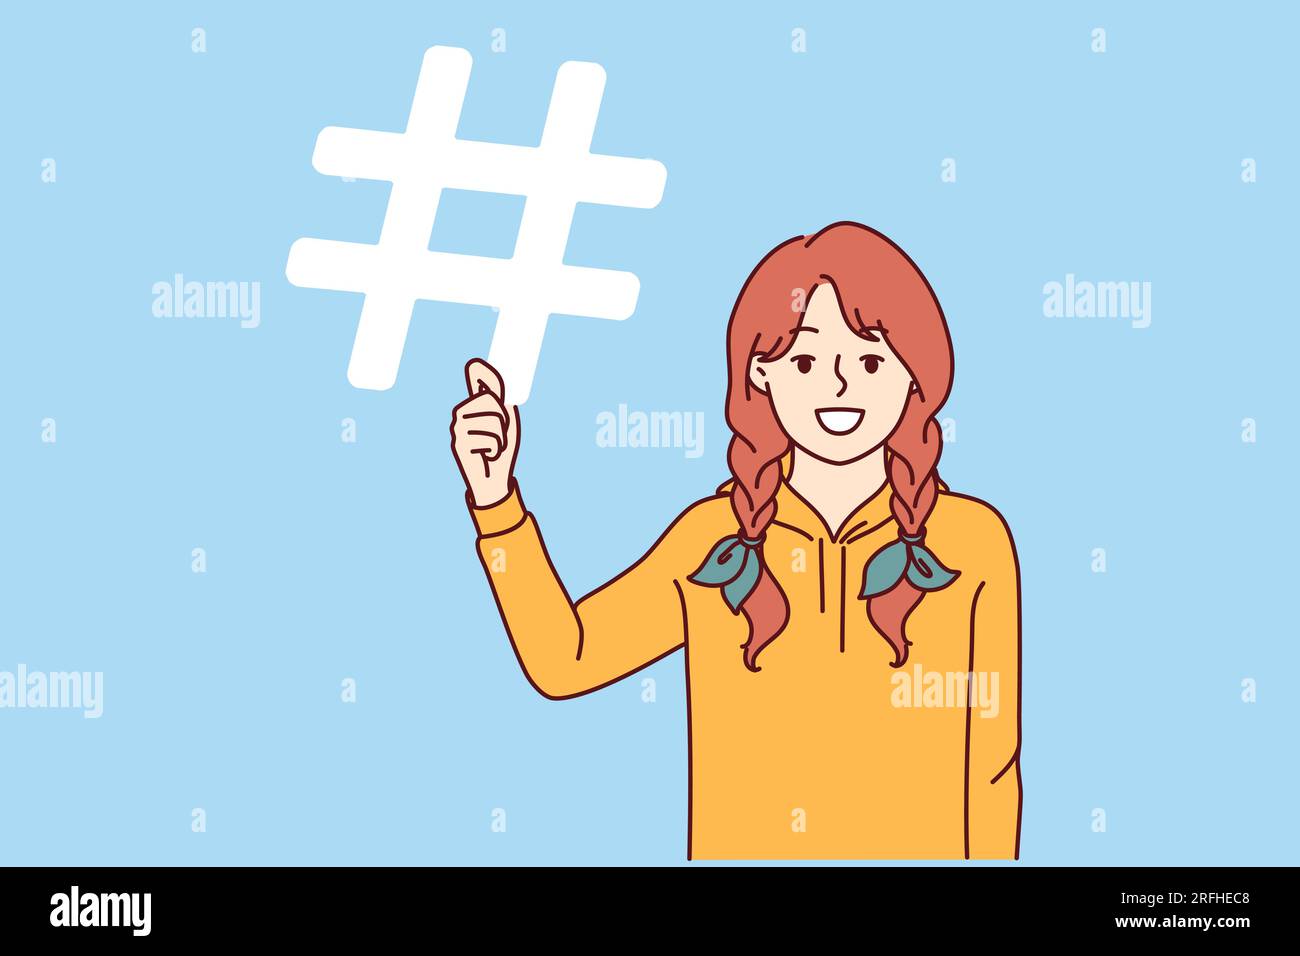 Das kleine Mädchen hält ein Hashtag-Symbol in der Hand, mit dem es seine Freunde oder Veranstaltungen in sozialen Medien mit einem Schild kennzeichnen kann. Schulmädchen mit Hashtag empfiehlt, eine Verknüpfung herzustellen und ein spezielles Zeichen für die erneute Verknüpfung zu verwenden Stock Vektor